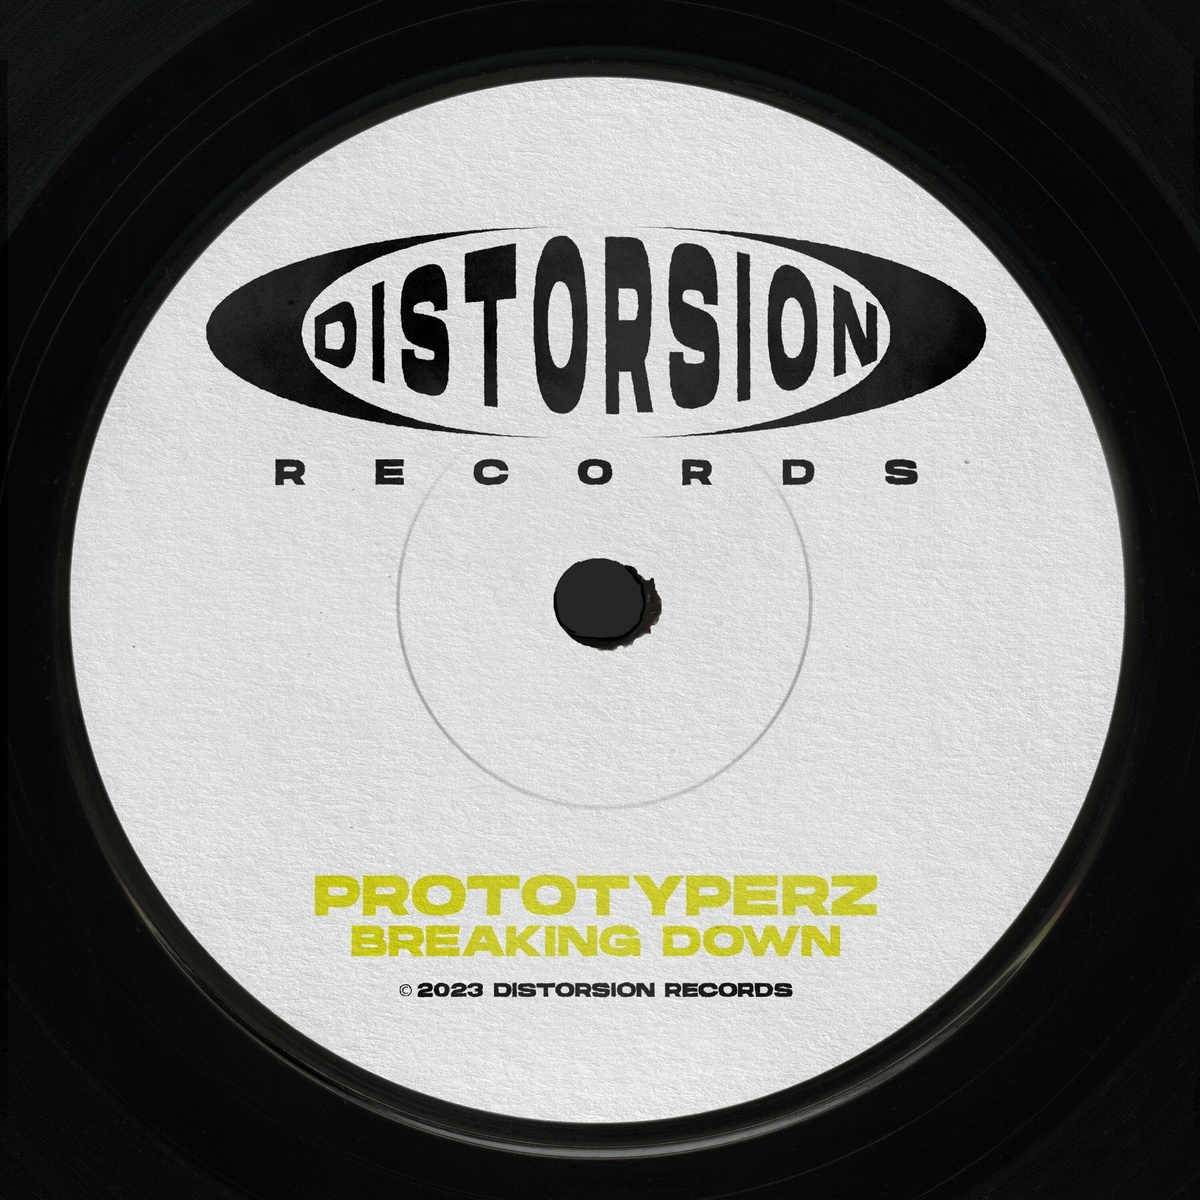 Prototyperz - Breaking Down (Original Mix)